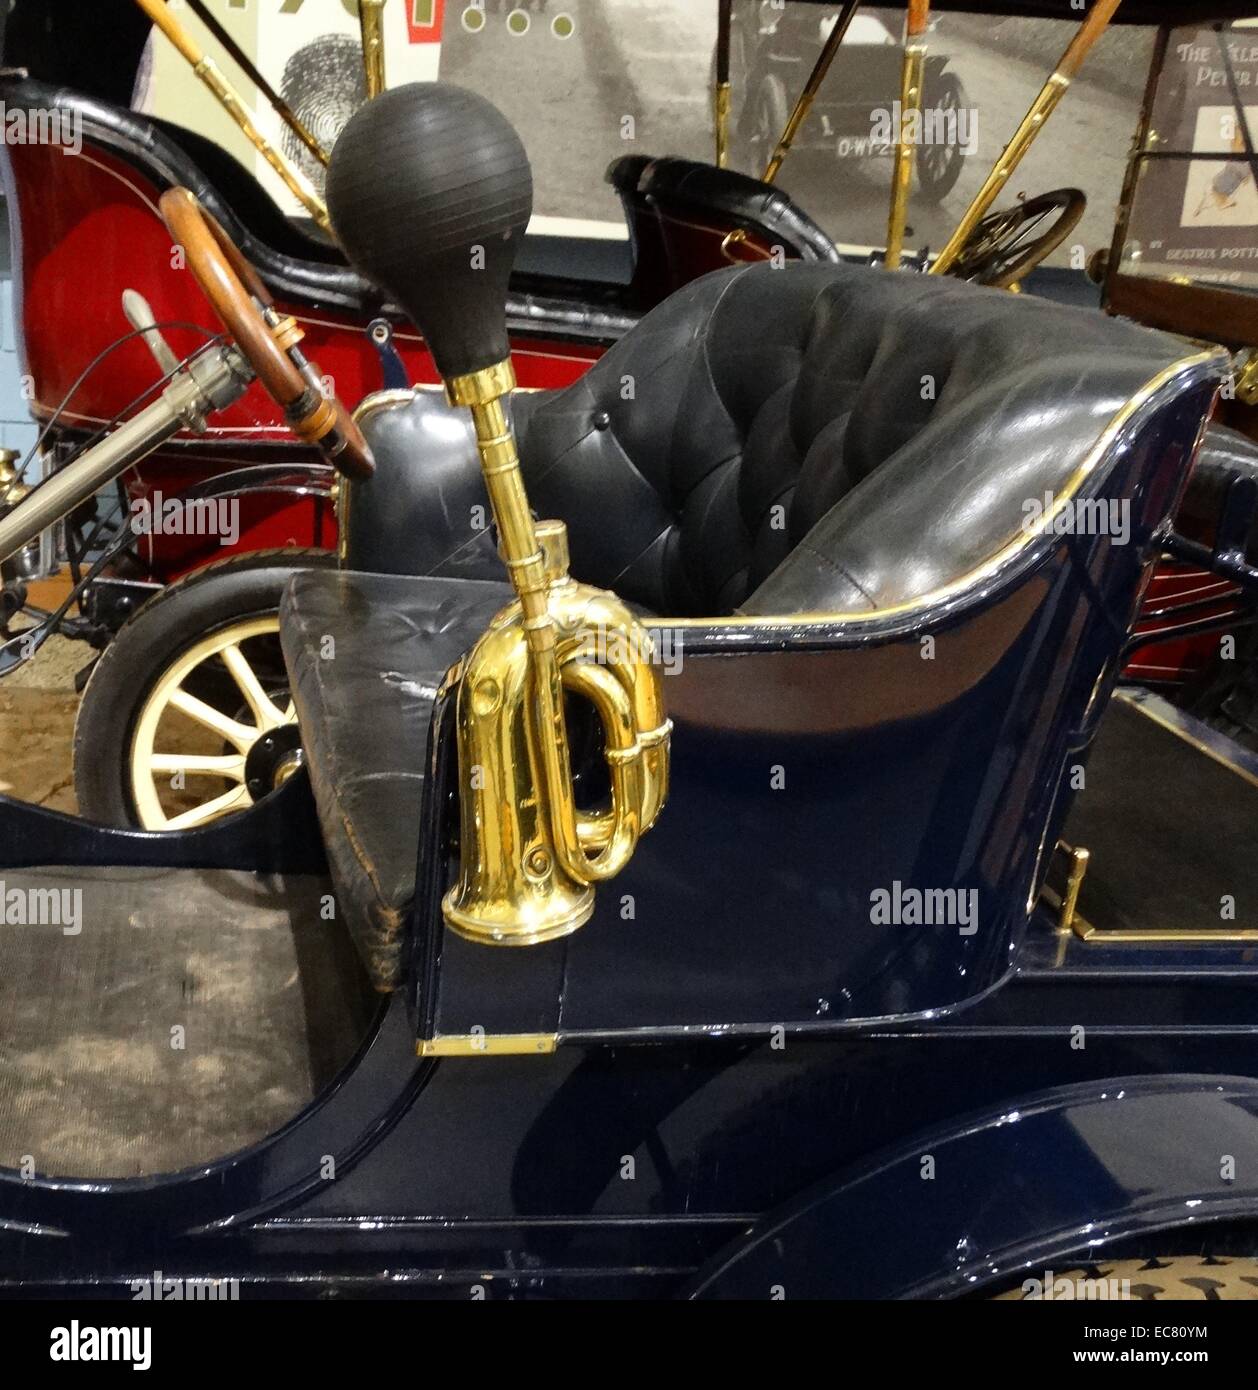 Wolseley 1904 phaeton 6cv. Cette voiture a été l'un des derniers produits Wolseley produit avant Herbert Austin quitté pour fonder sa propre entreprise en 1905. Il s'agit d'un modèle de production précoce dont seulement environ huit autres exemples sont connus pour exister. Banque D'Images